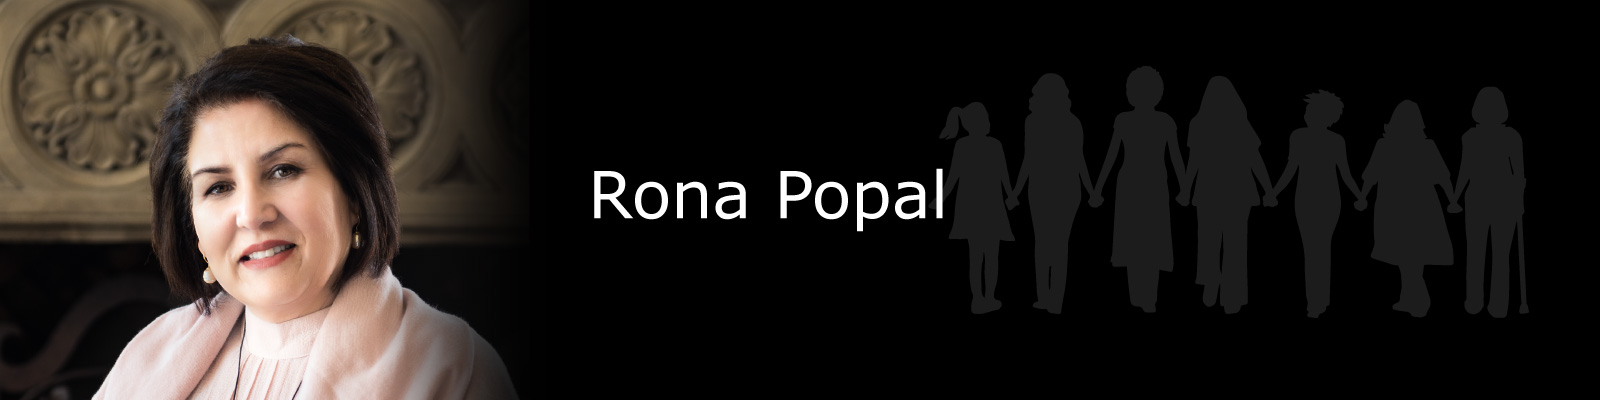 Photo of Rona Popal.